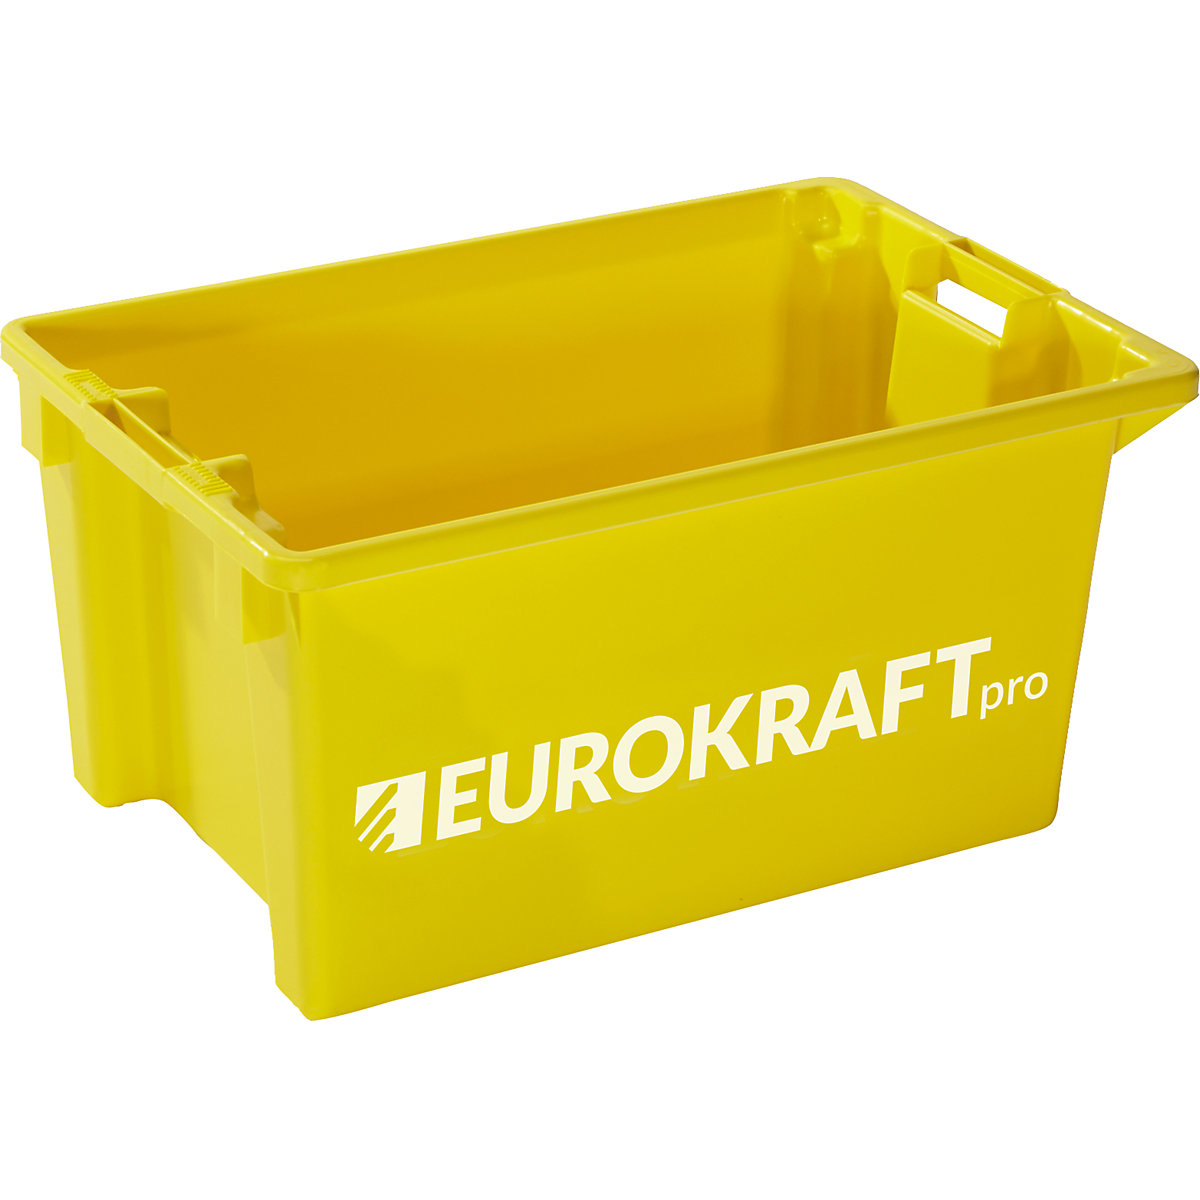 Okretni spremnik za slaganje – eurokraft pro, volumen 50 l, pak. 3 kom., u žutoj boji